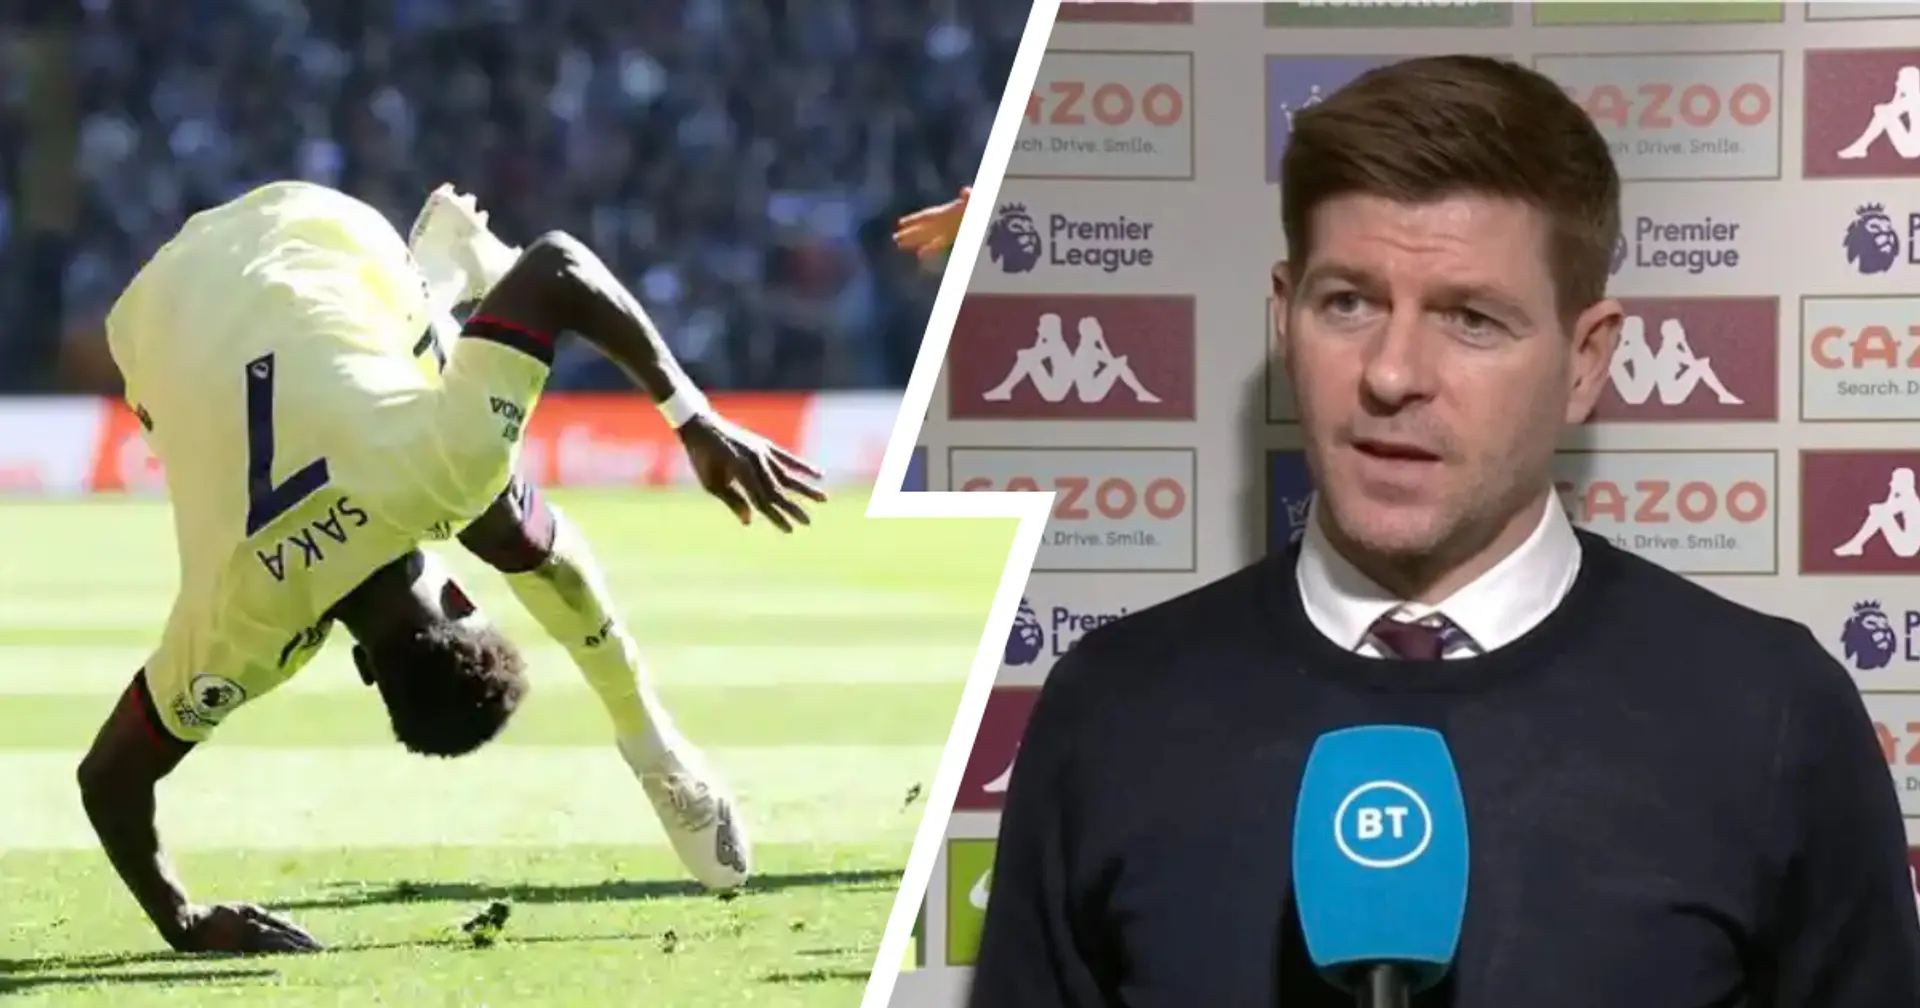 "Ich sitze hier mit Schrauben in den Hüften": Steven Gerrard schießt gegen Bukayo Saka nach den Anschuldigungen gegen Aston Villa